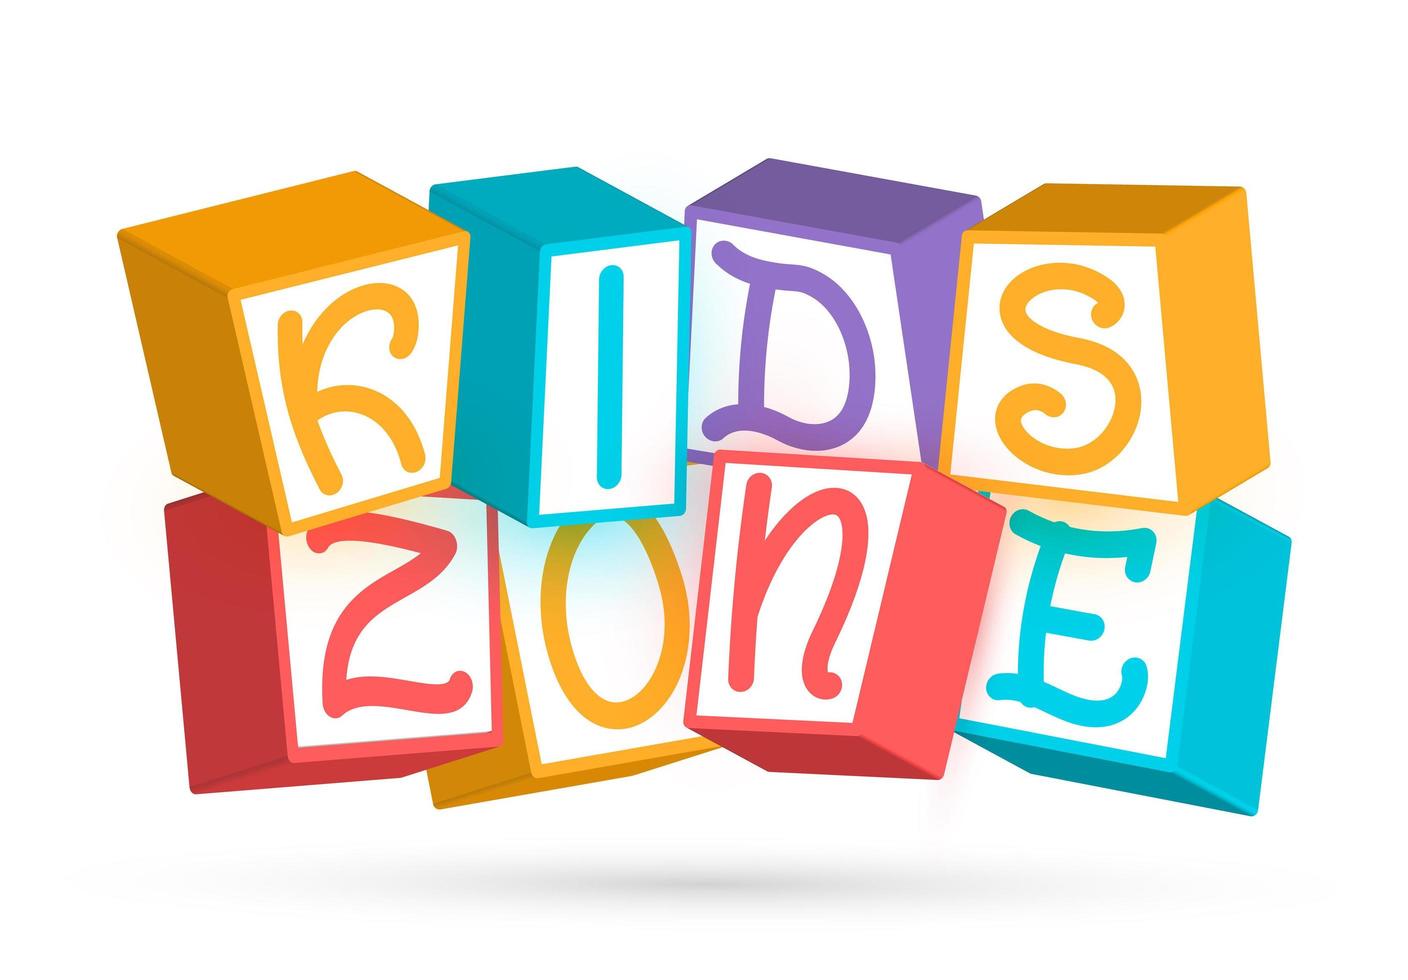 Blocos de zona infantil elementos geométricos coloridos ao redor do título  crianças brincam placa de sinal com fonte de cubos de bebê colorido parque  de jogo ou logotipo da área de jogo